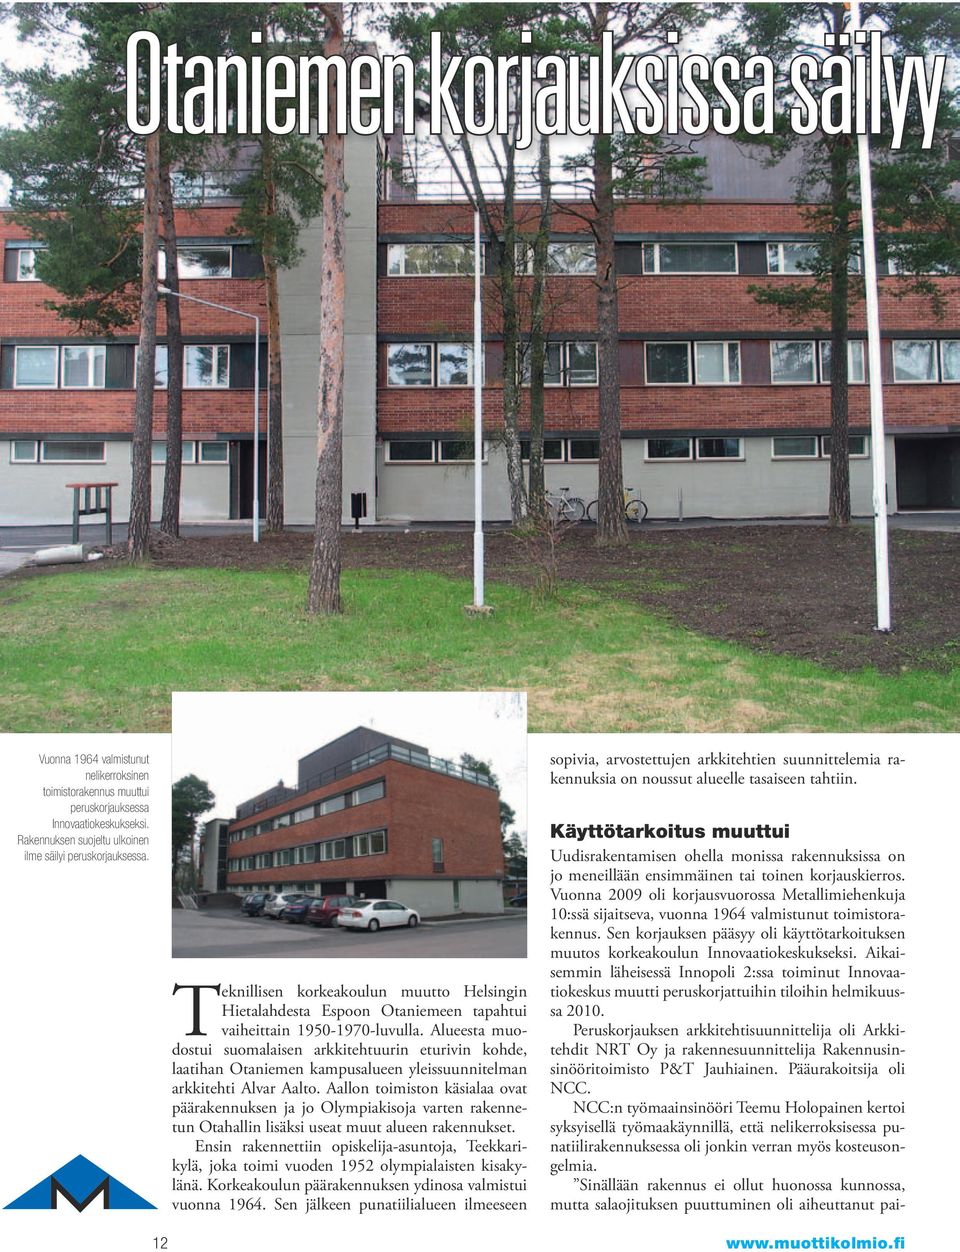 Alueesta muodostui suomalaisen arkkitehtuurin eturivin kohde, laatihan Otaniemen kampusalueen yleissuunnitelman arkkitehti Alvar Aalto.